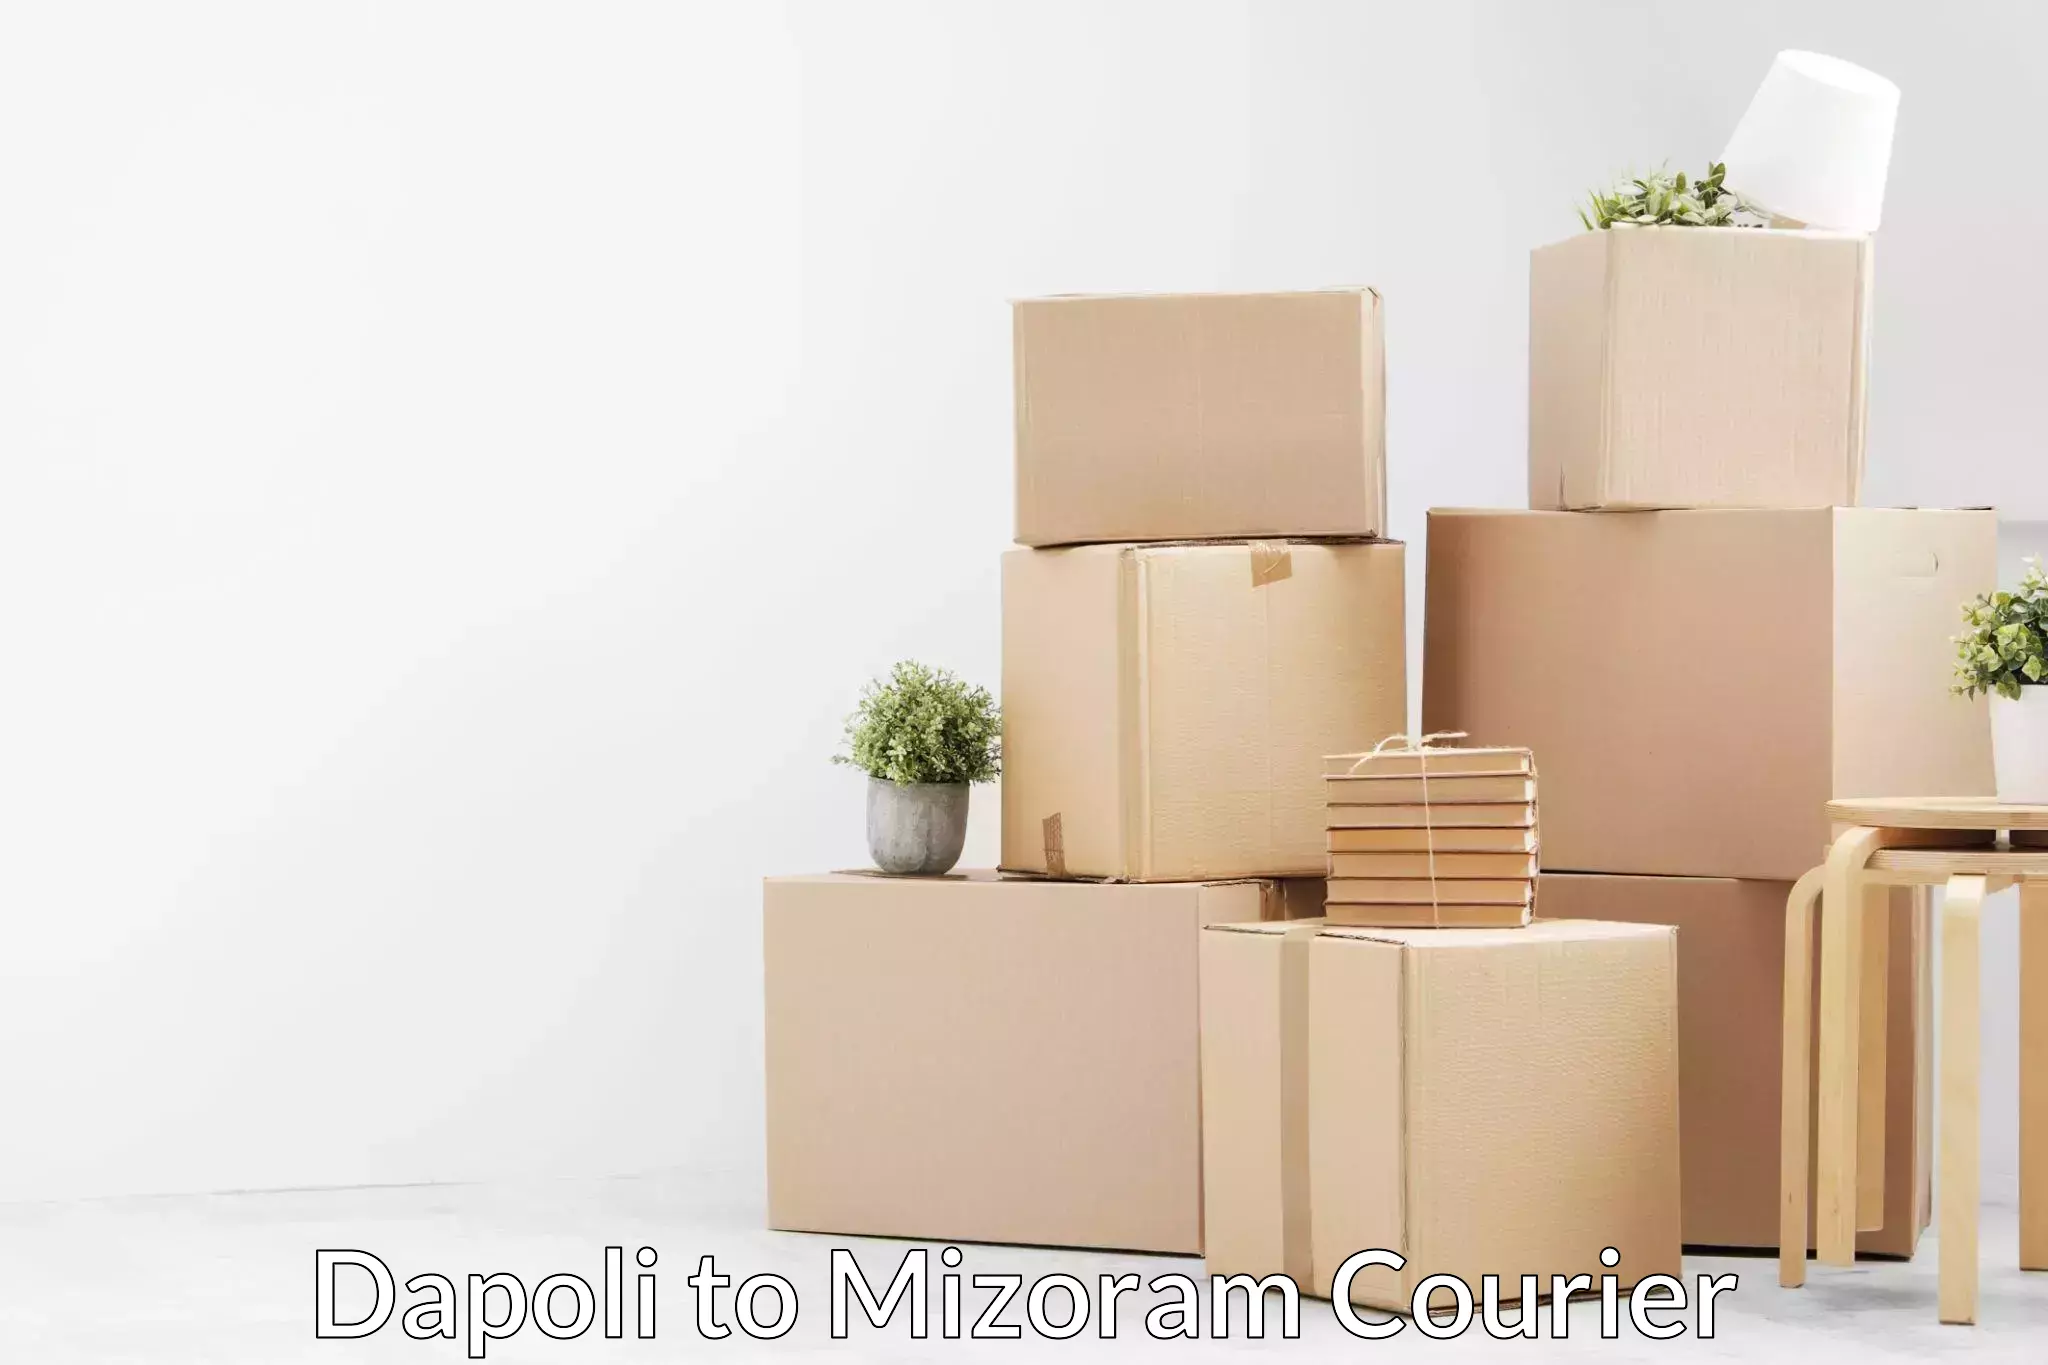 Moving and storage services Dapoli to Mizoram